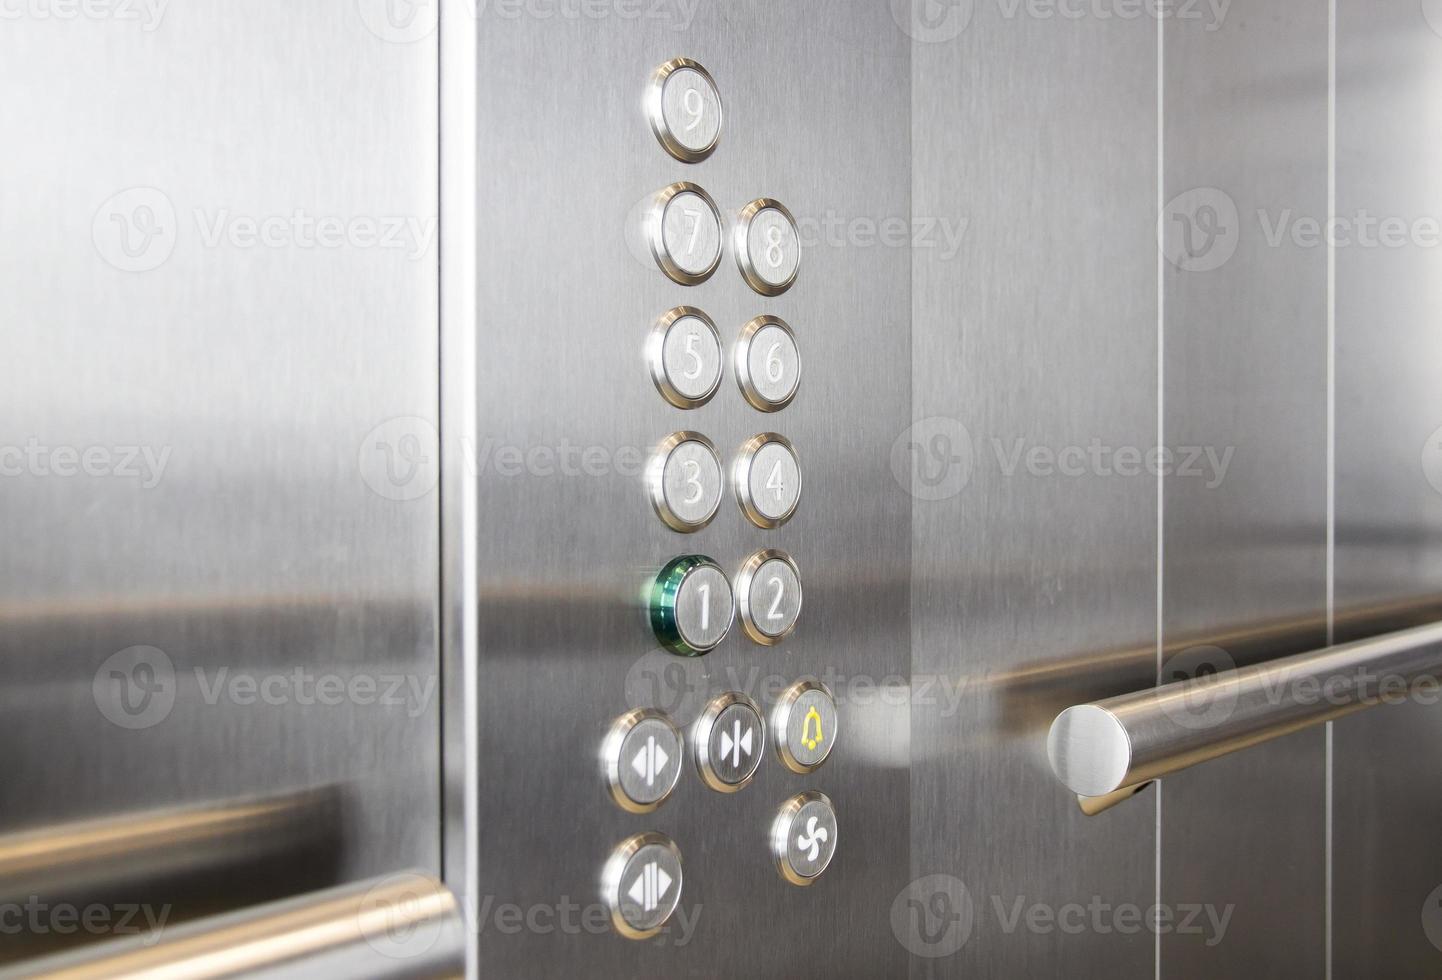 boutons et main courante dans les centres d'affaires d'ascenseurs modernes photo